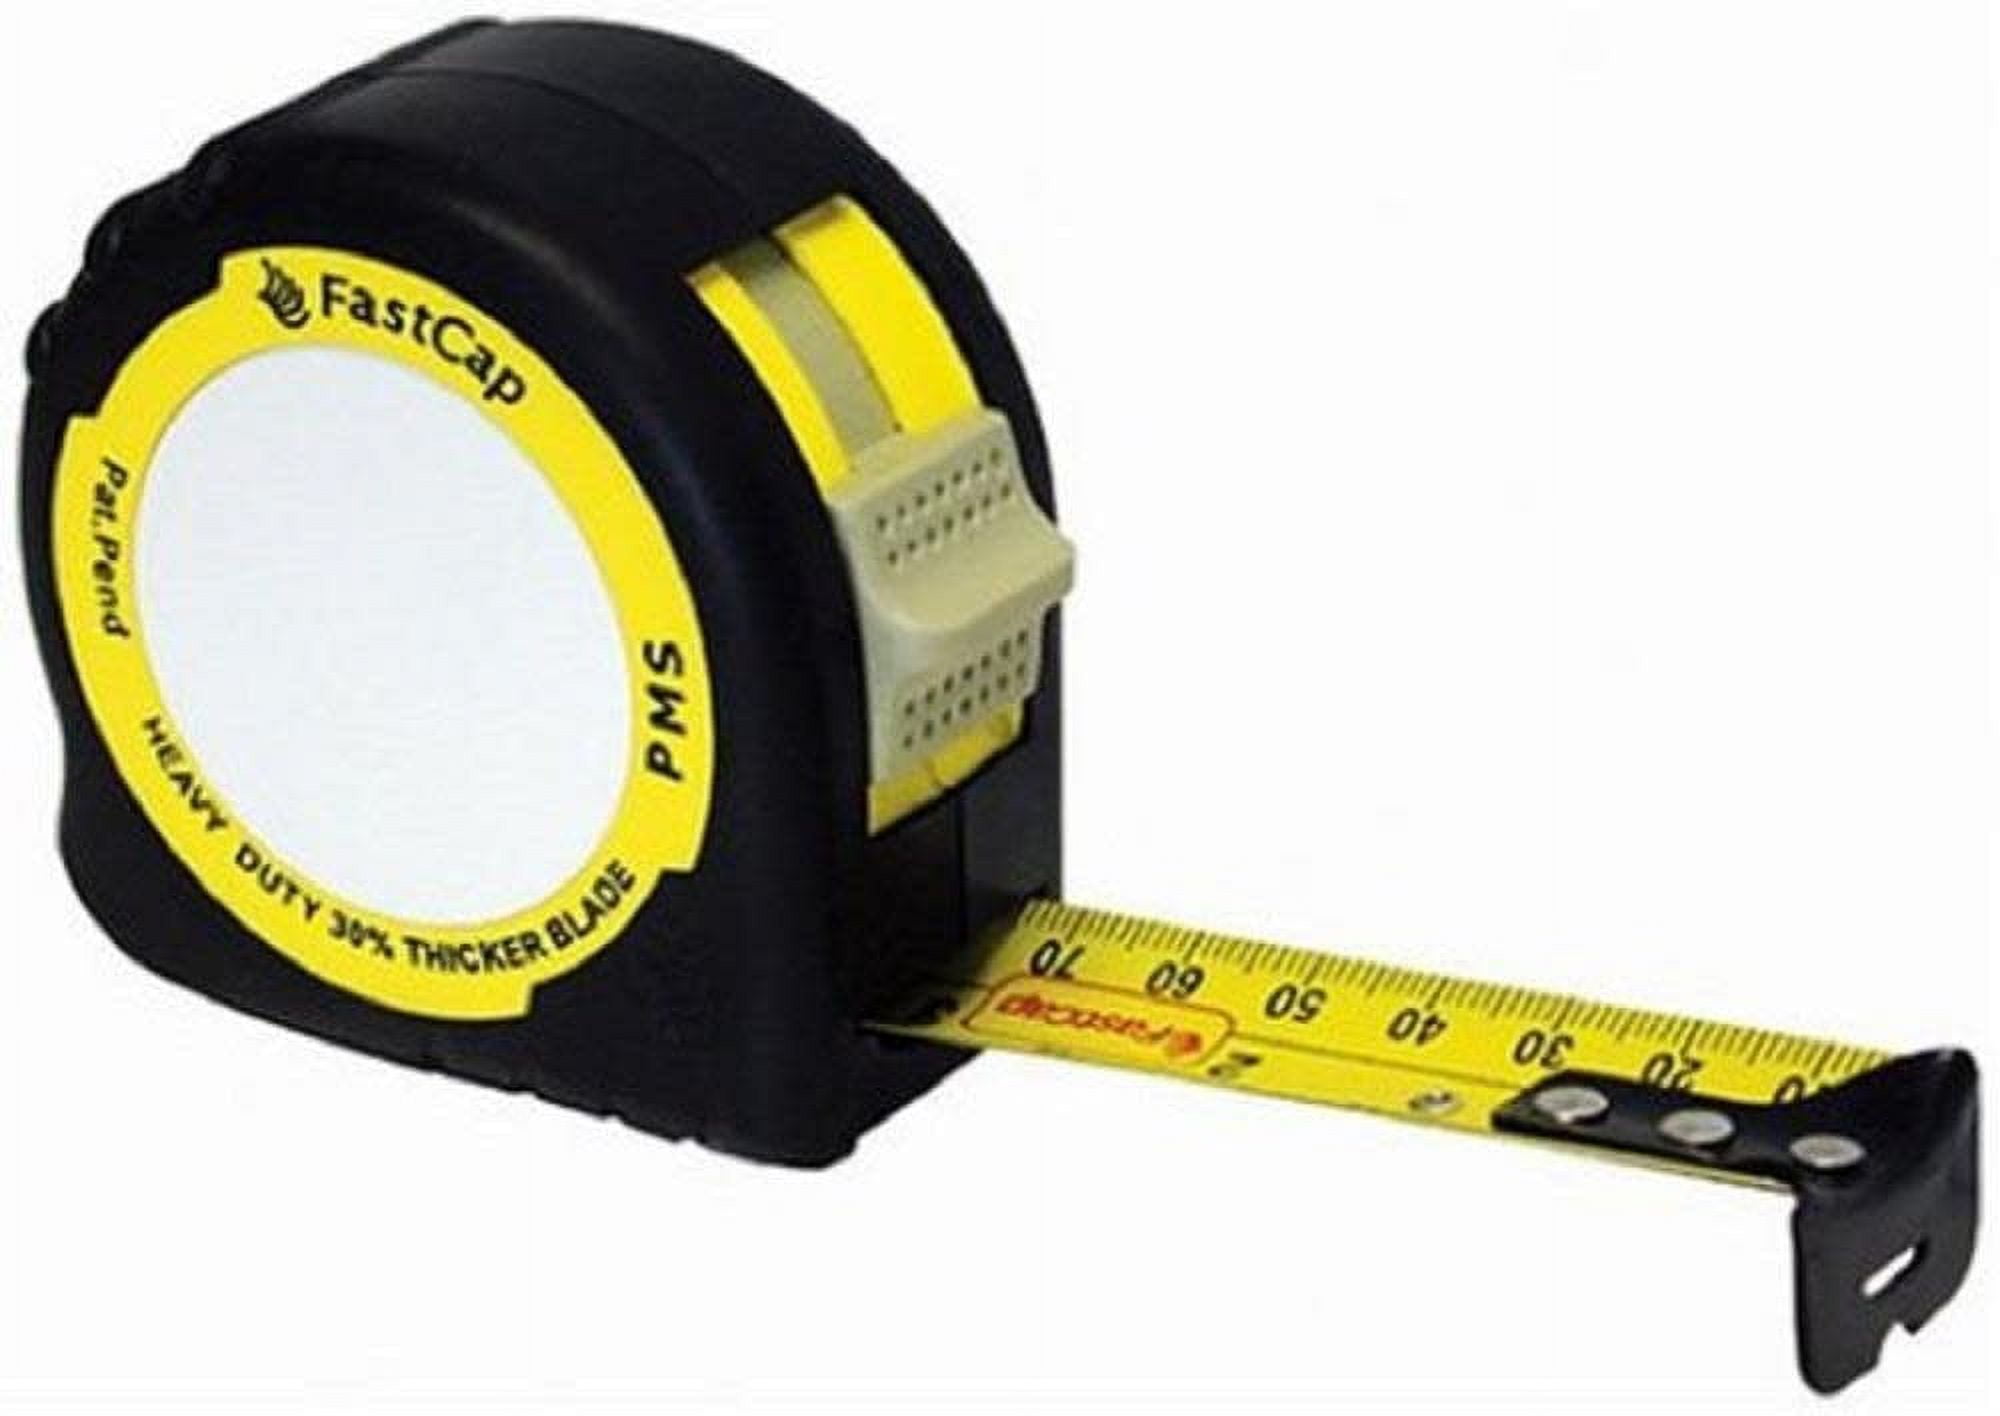 FastCap ProCarpenter Metric / Standard Tape Measure